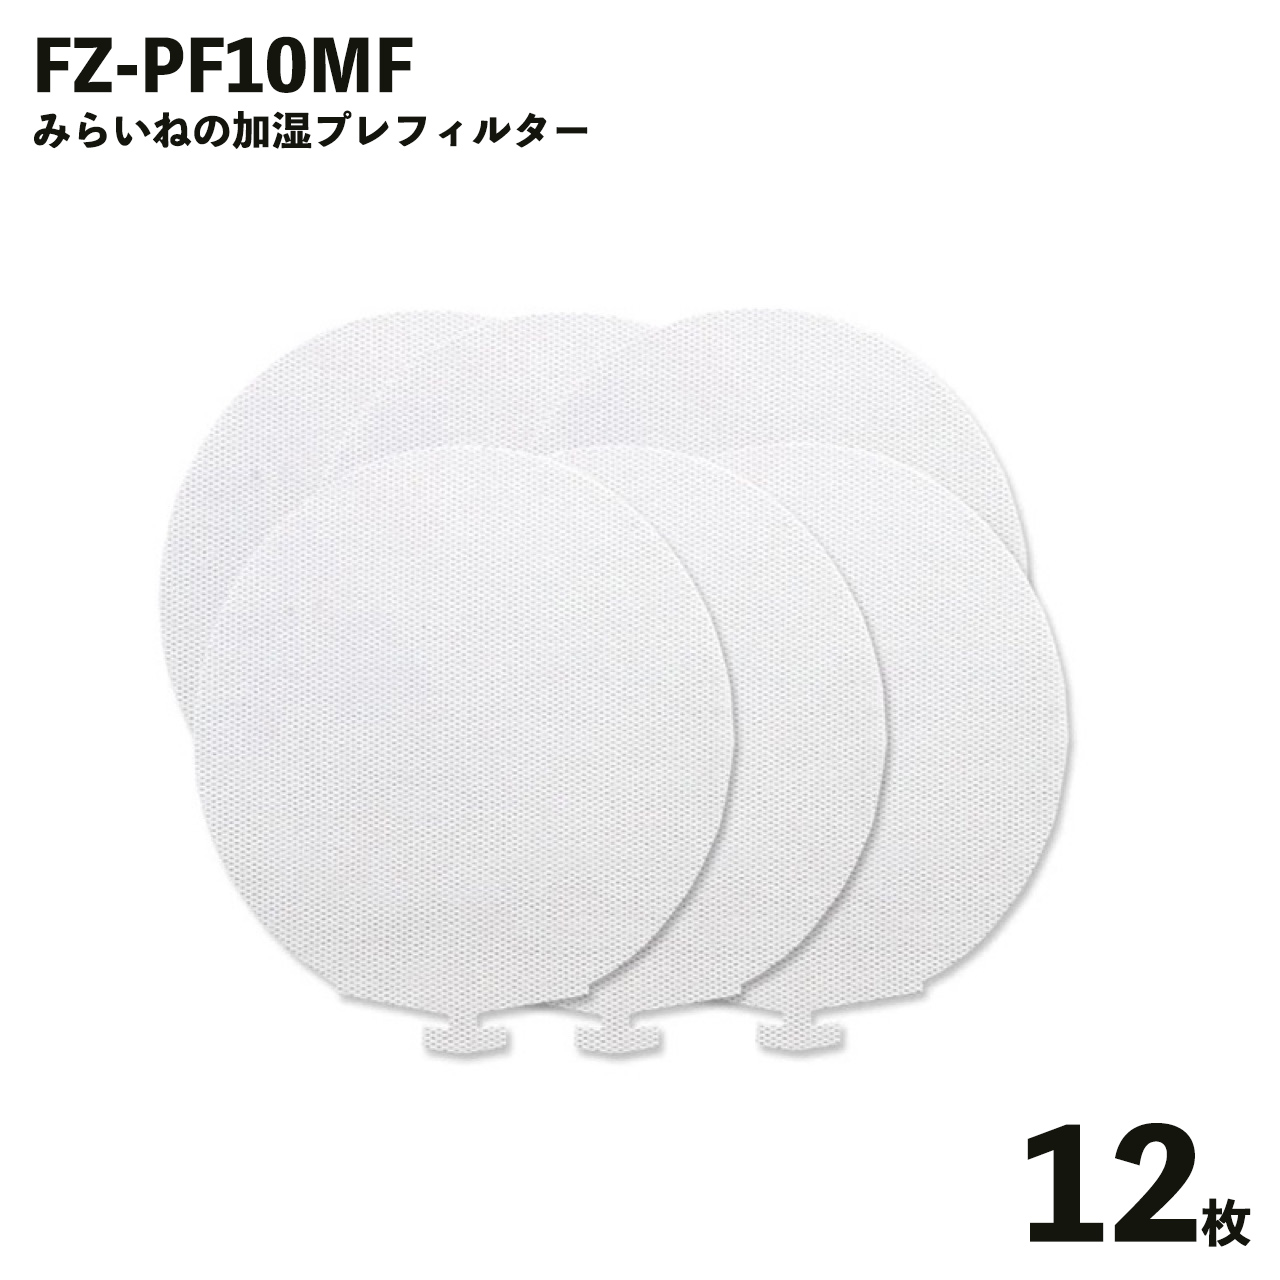 大放出セール シャープ FZ-PF10MF 空気清浄機 フィルター 互換品 取替え用 プレフィルター 空気清浄機用交換部品 12枚入